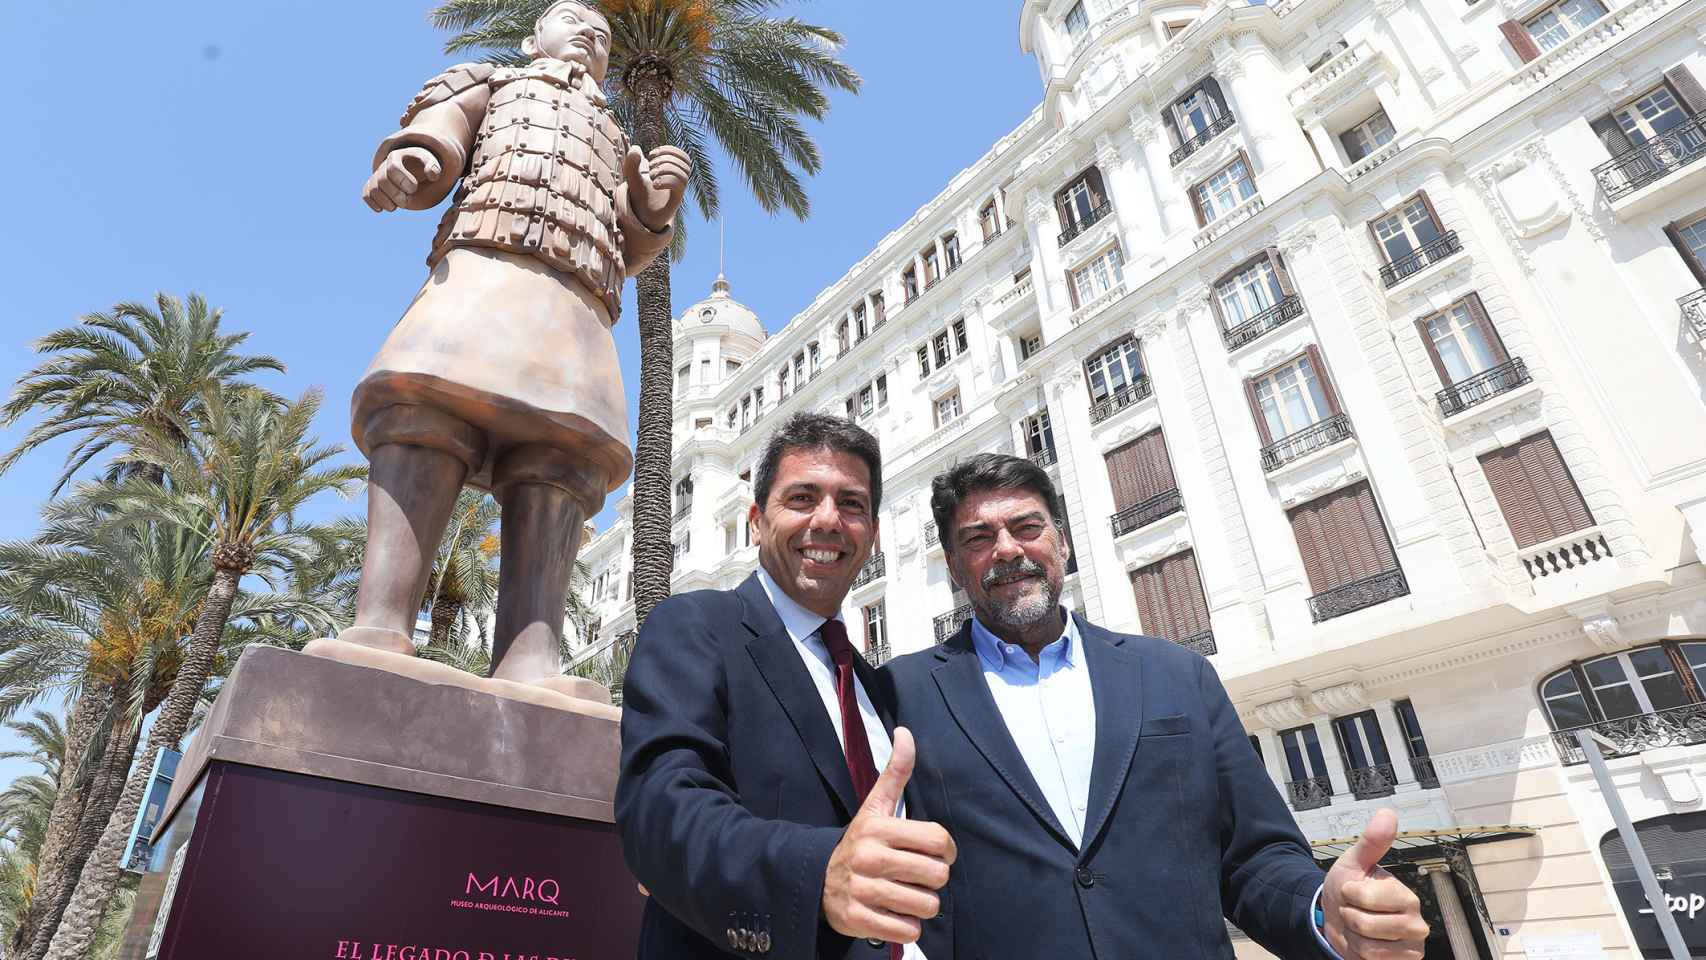 El previsible futuro president de la Generalitat, Carlos Mazón, visita en compañía del alcalde de Alicante, Luis Barcala,  la figura gigante del guerrero de Xi’an.